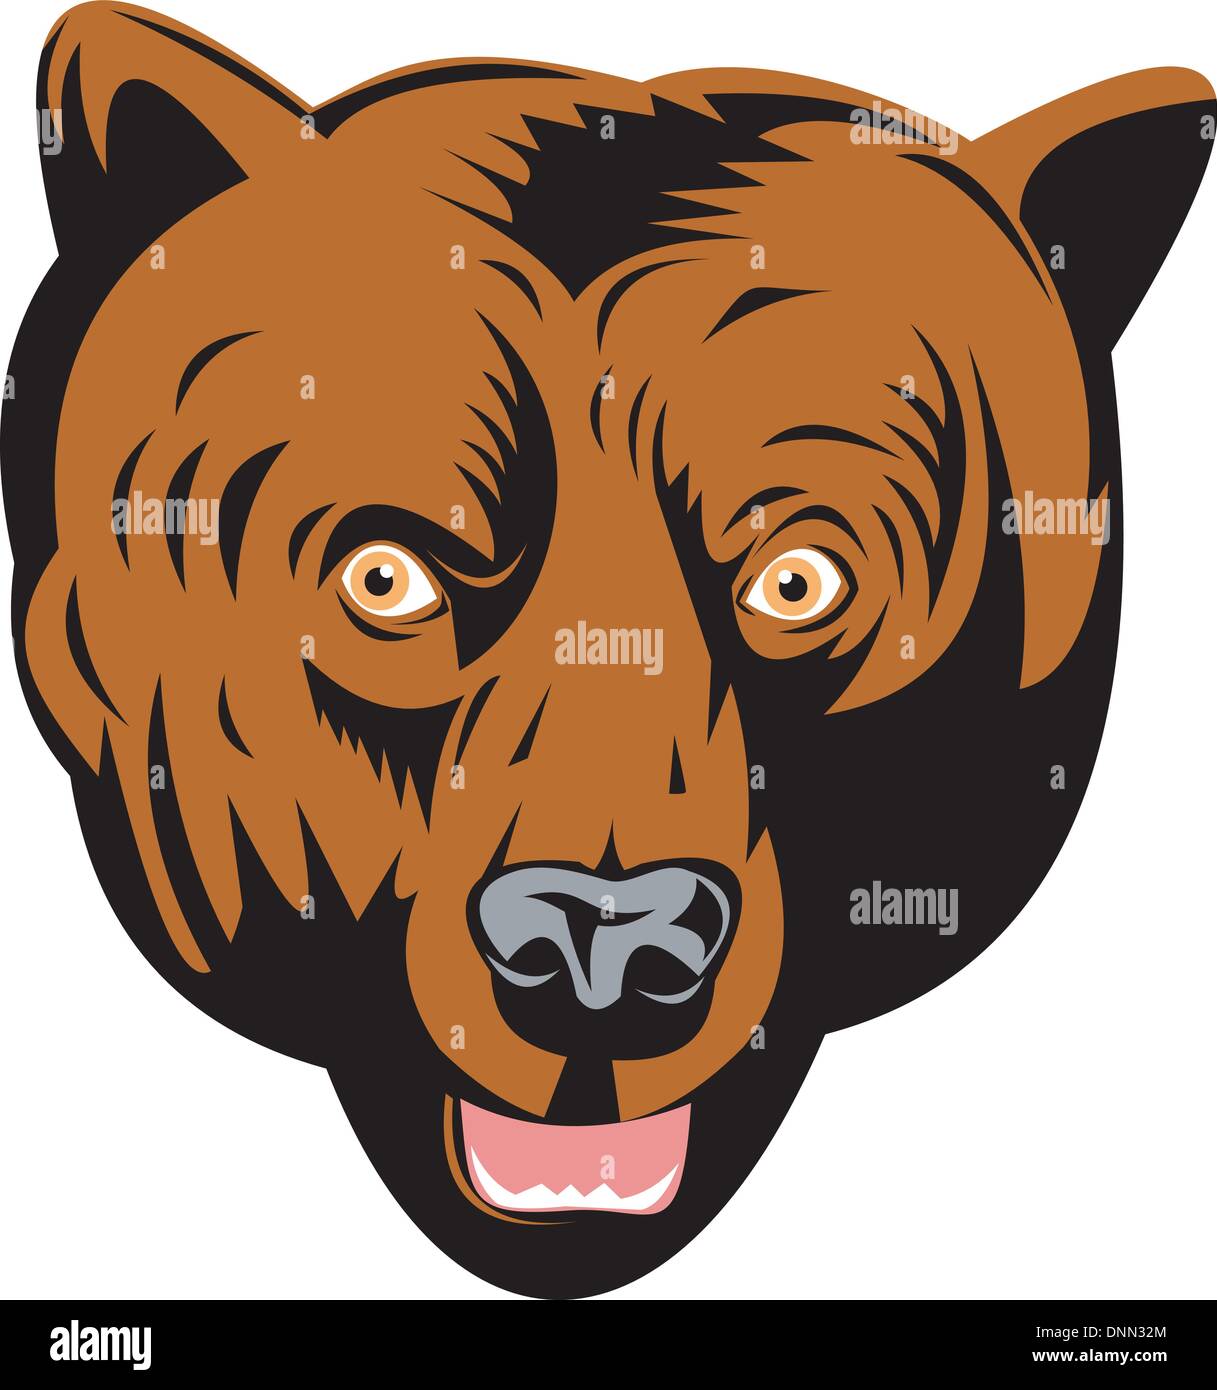 Illustrazione di un grizzly o orso bruno testa rivolta verso il lato anteriore fatto rétro xilografia stile. Illustrazione Vettoriale